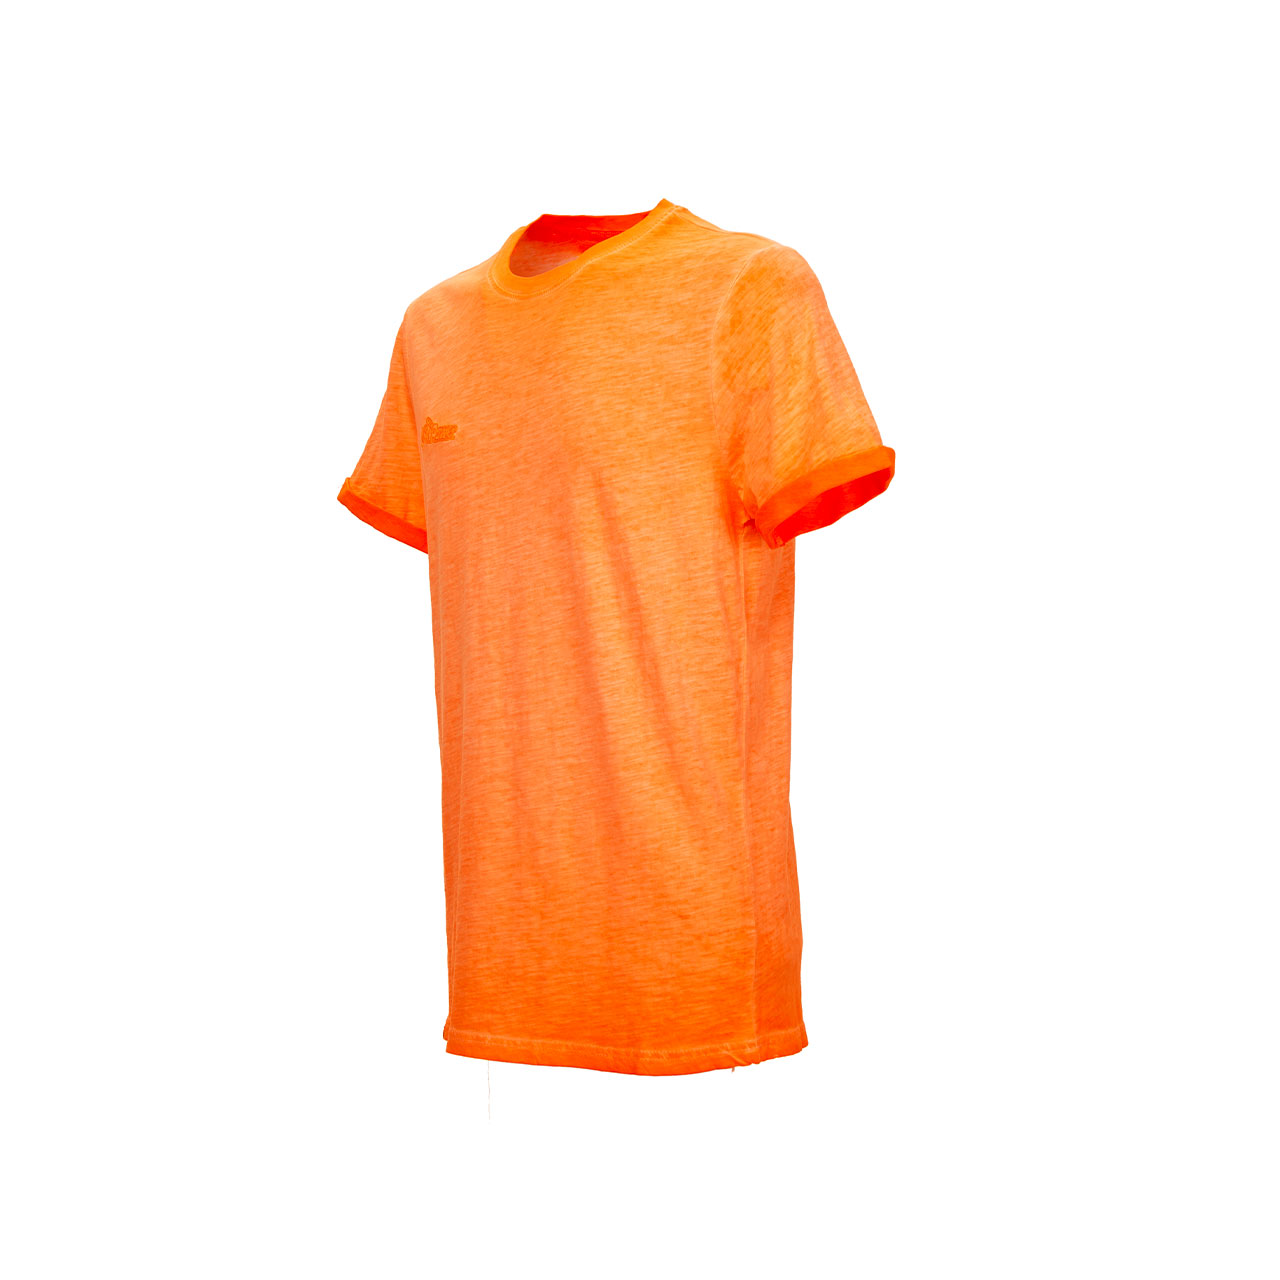 Tshirt da lavoro upower modello fluo colore orange fluo vista laterale sinistra